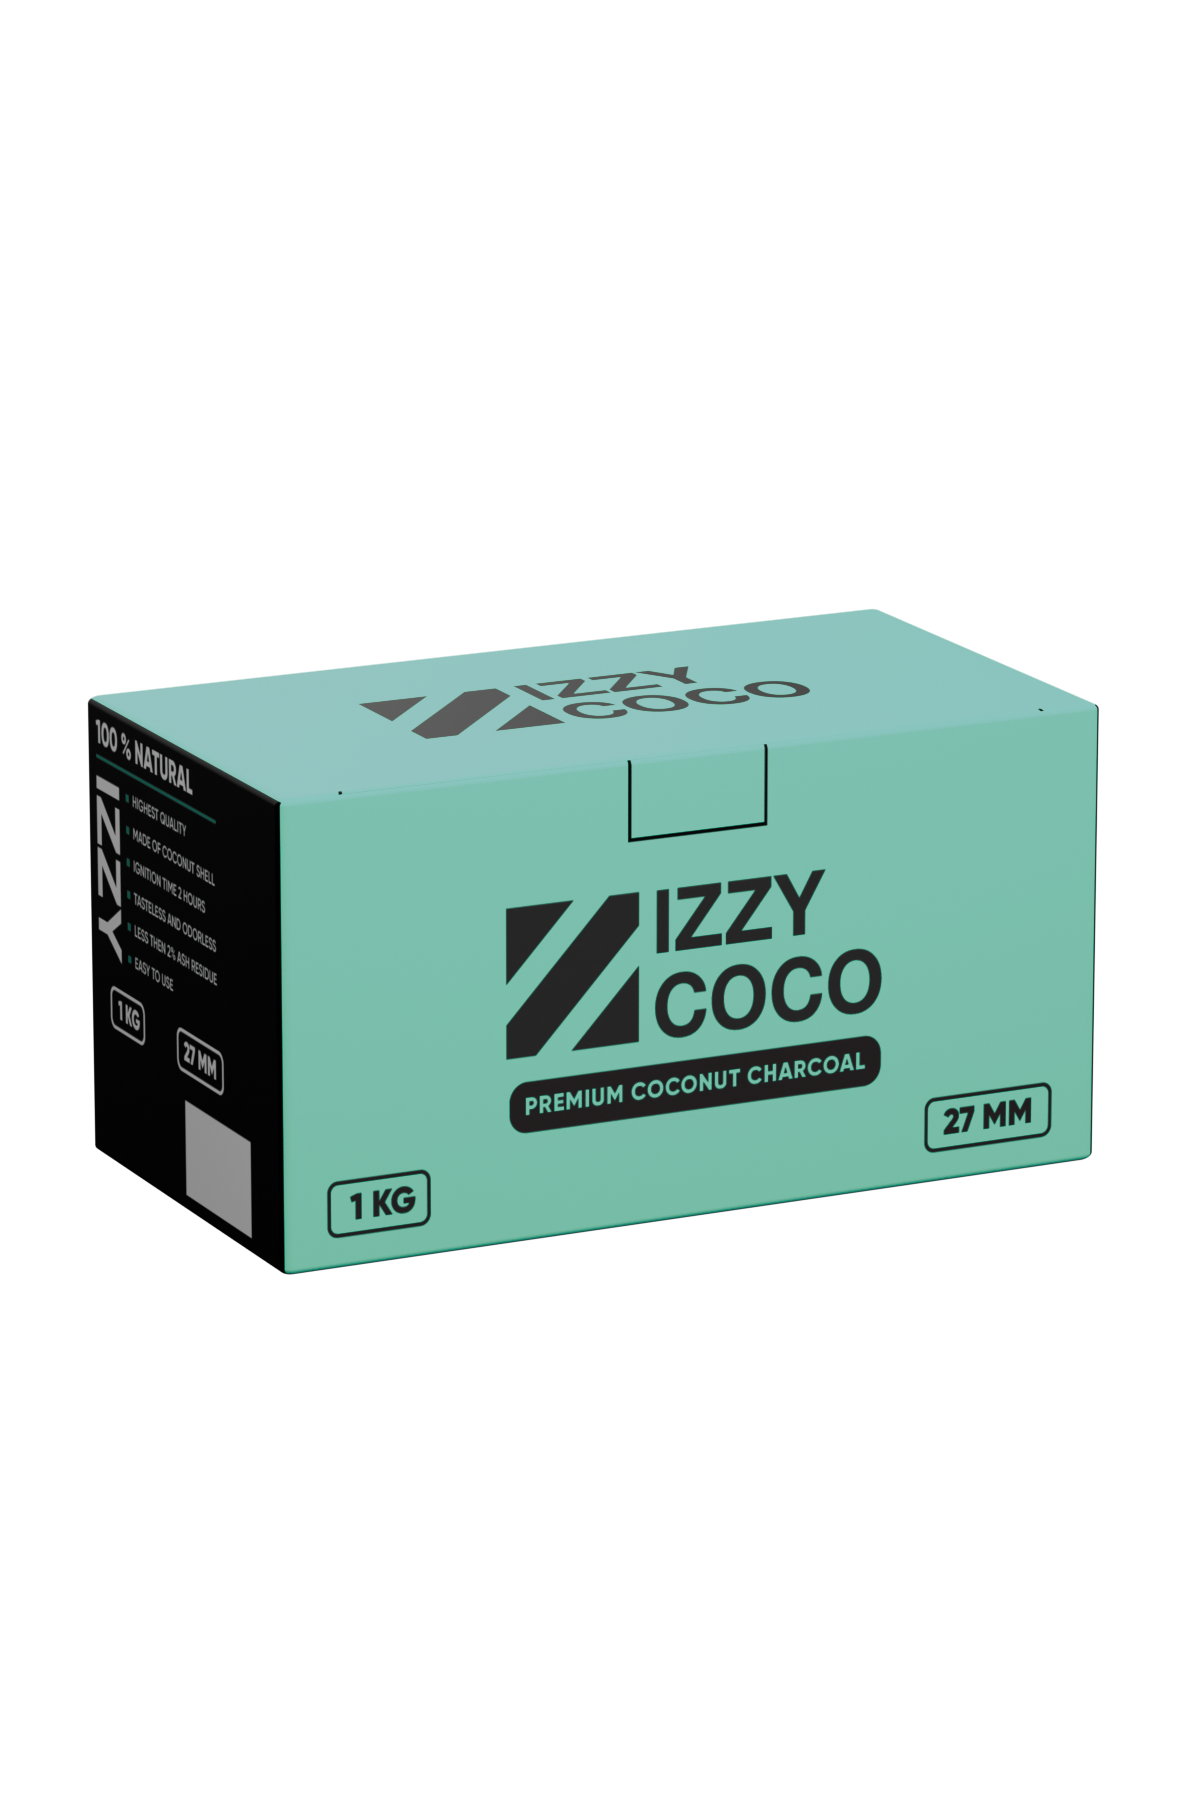 Uhlíky - Izzy Coco 27mm 1kg